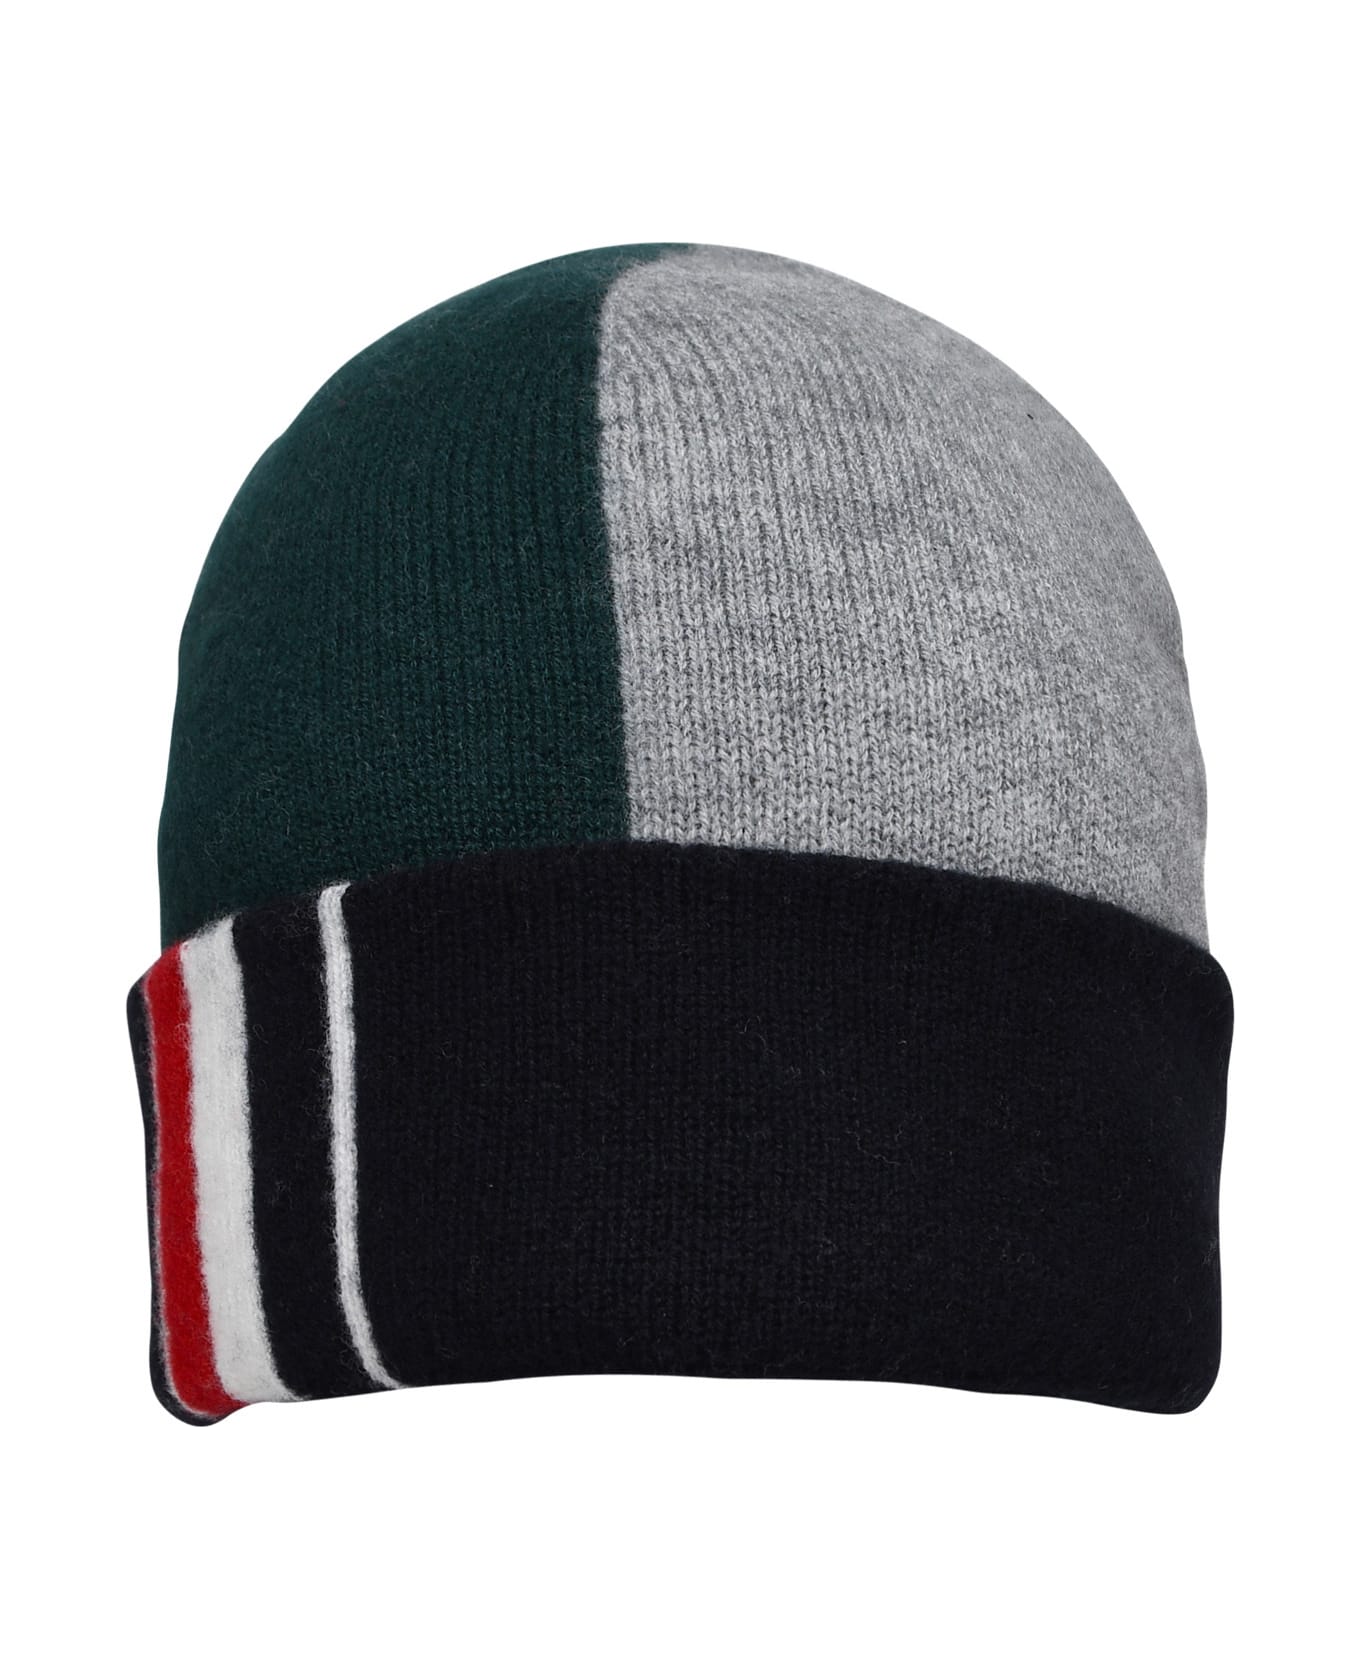 Thom Browne Multicolored Wool Beanie - GREEN 帽子